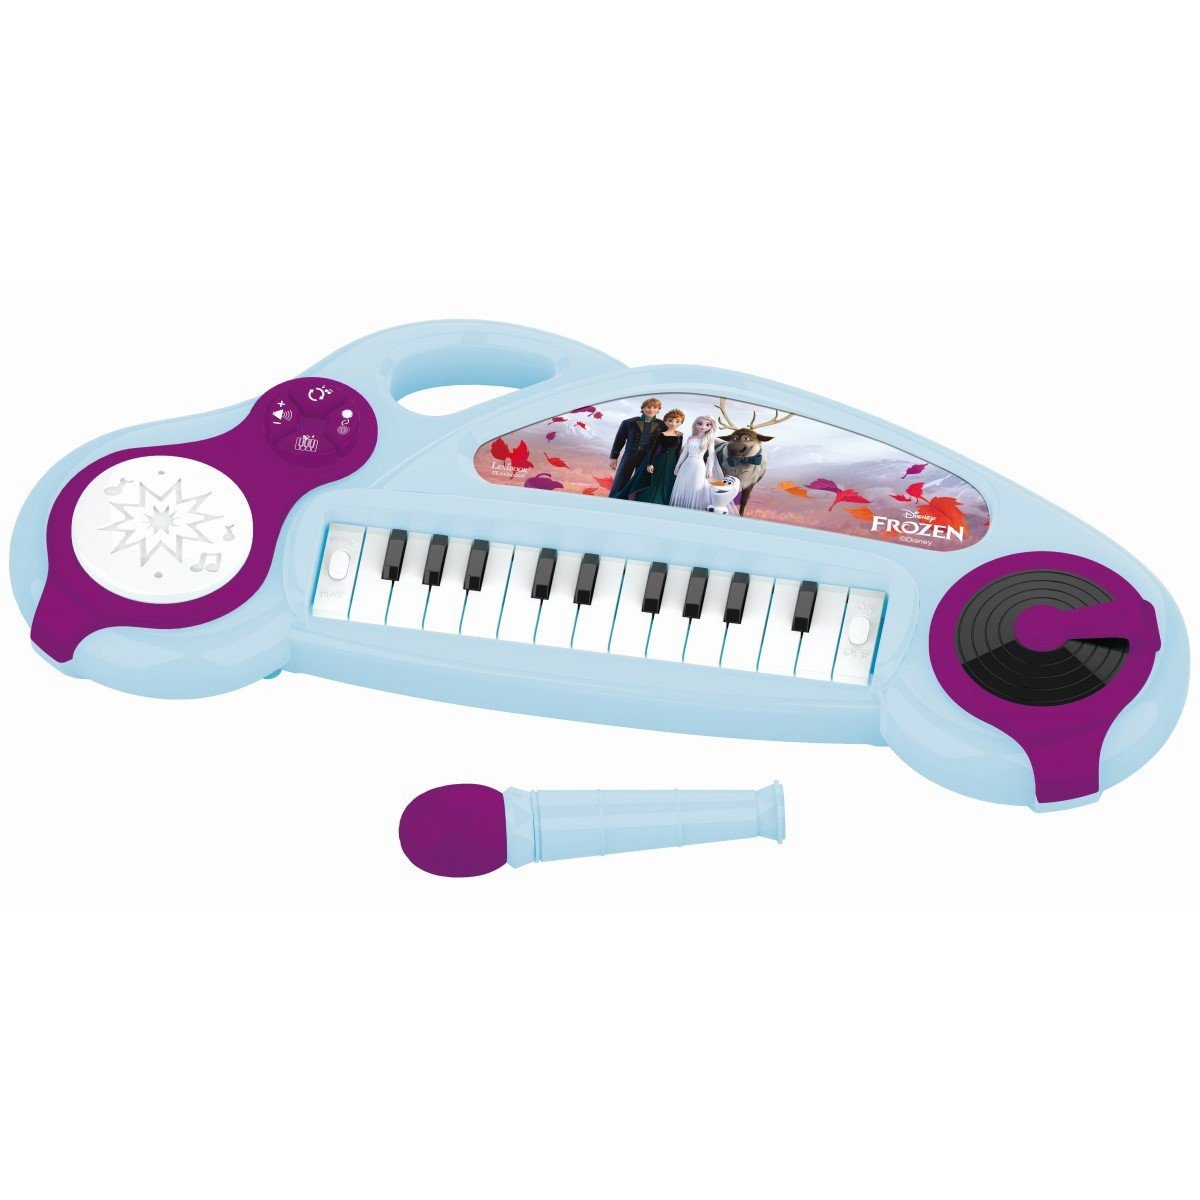 Lexibook® Spielzeug-Musikinstrument Elektronisches Keyboard Elsa Drumpad Anna Frozen Disney